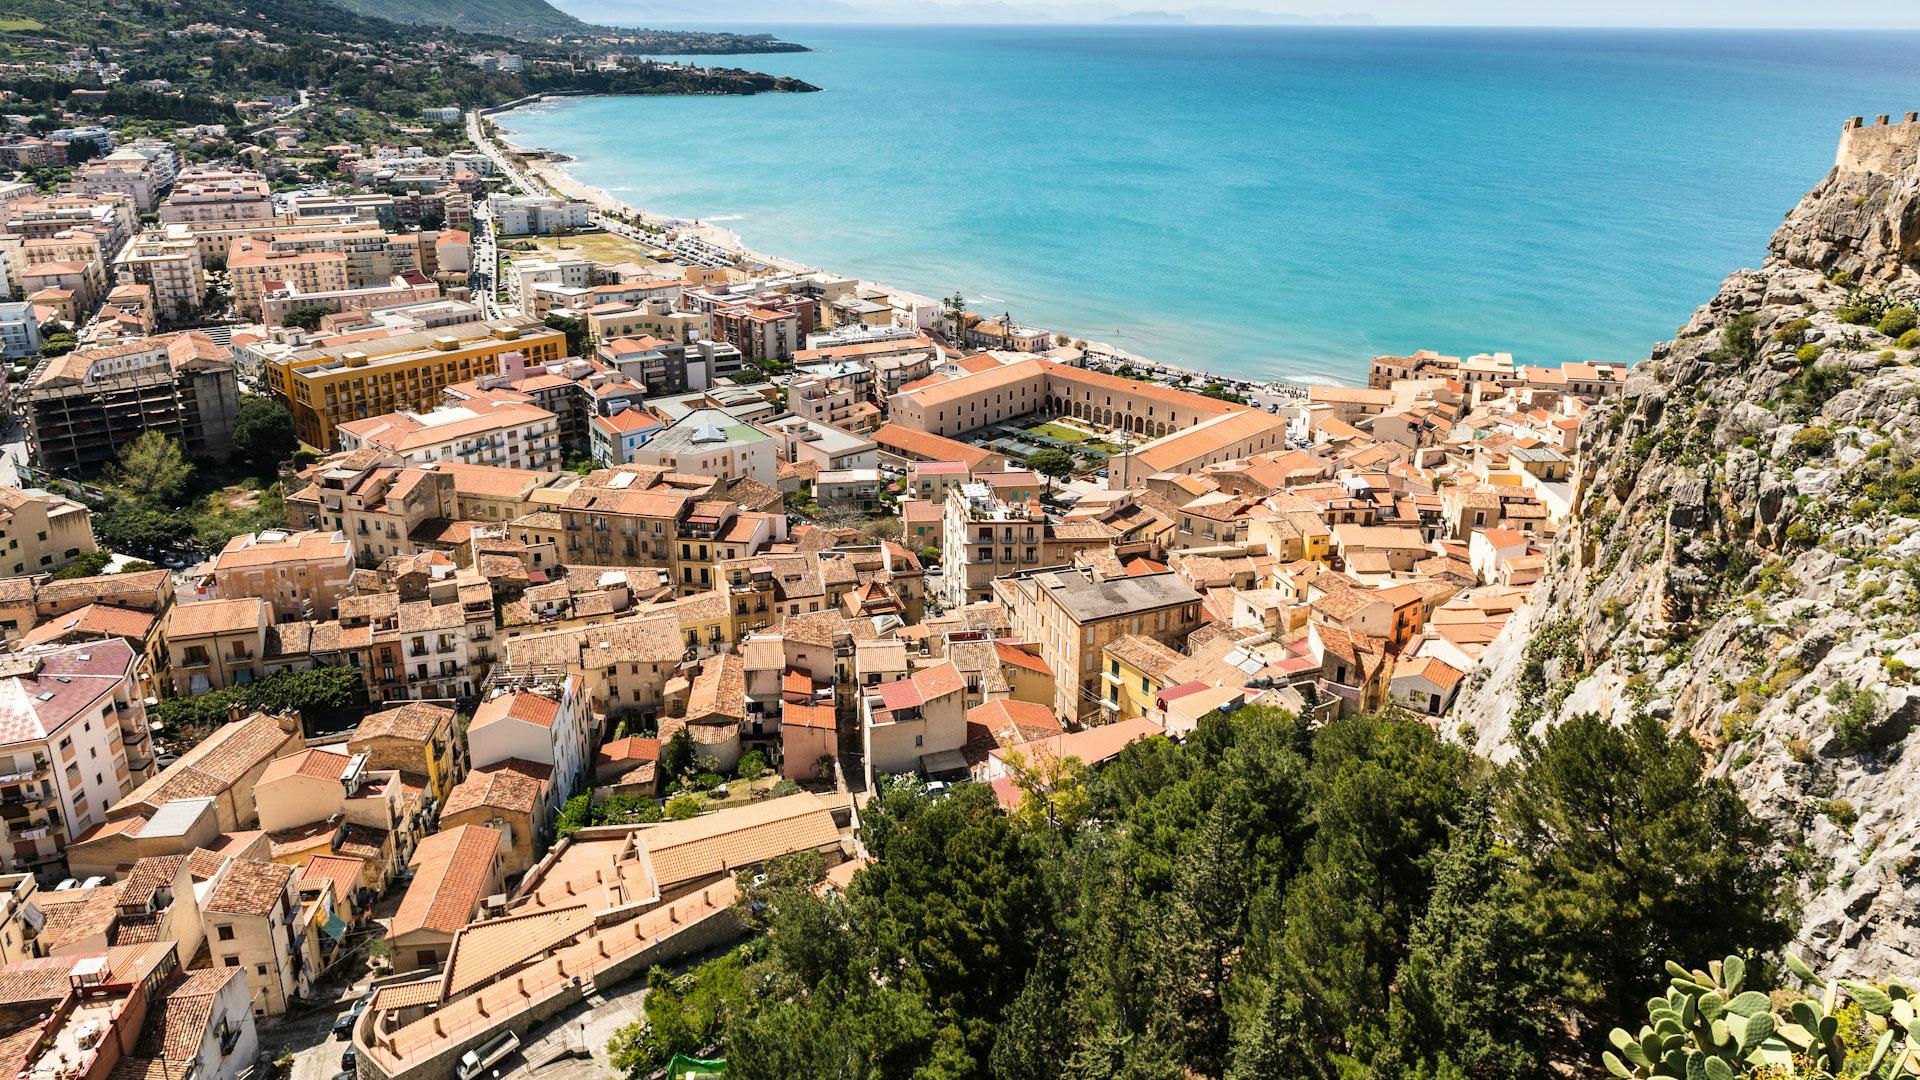 Puoi comprare casa in Sicilia a 3 euro: trovi l’offerta qui